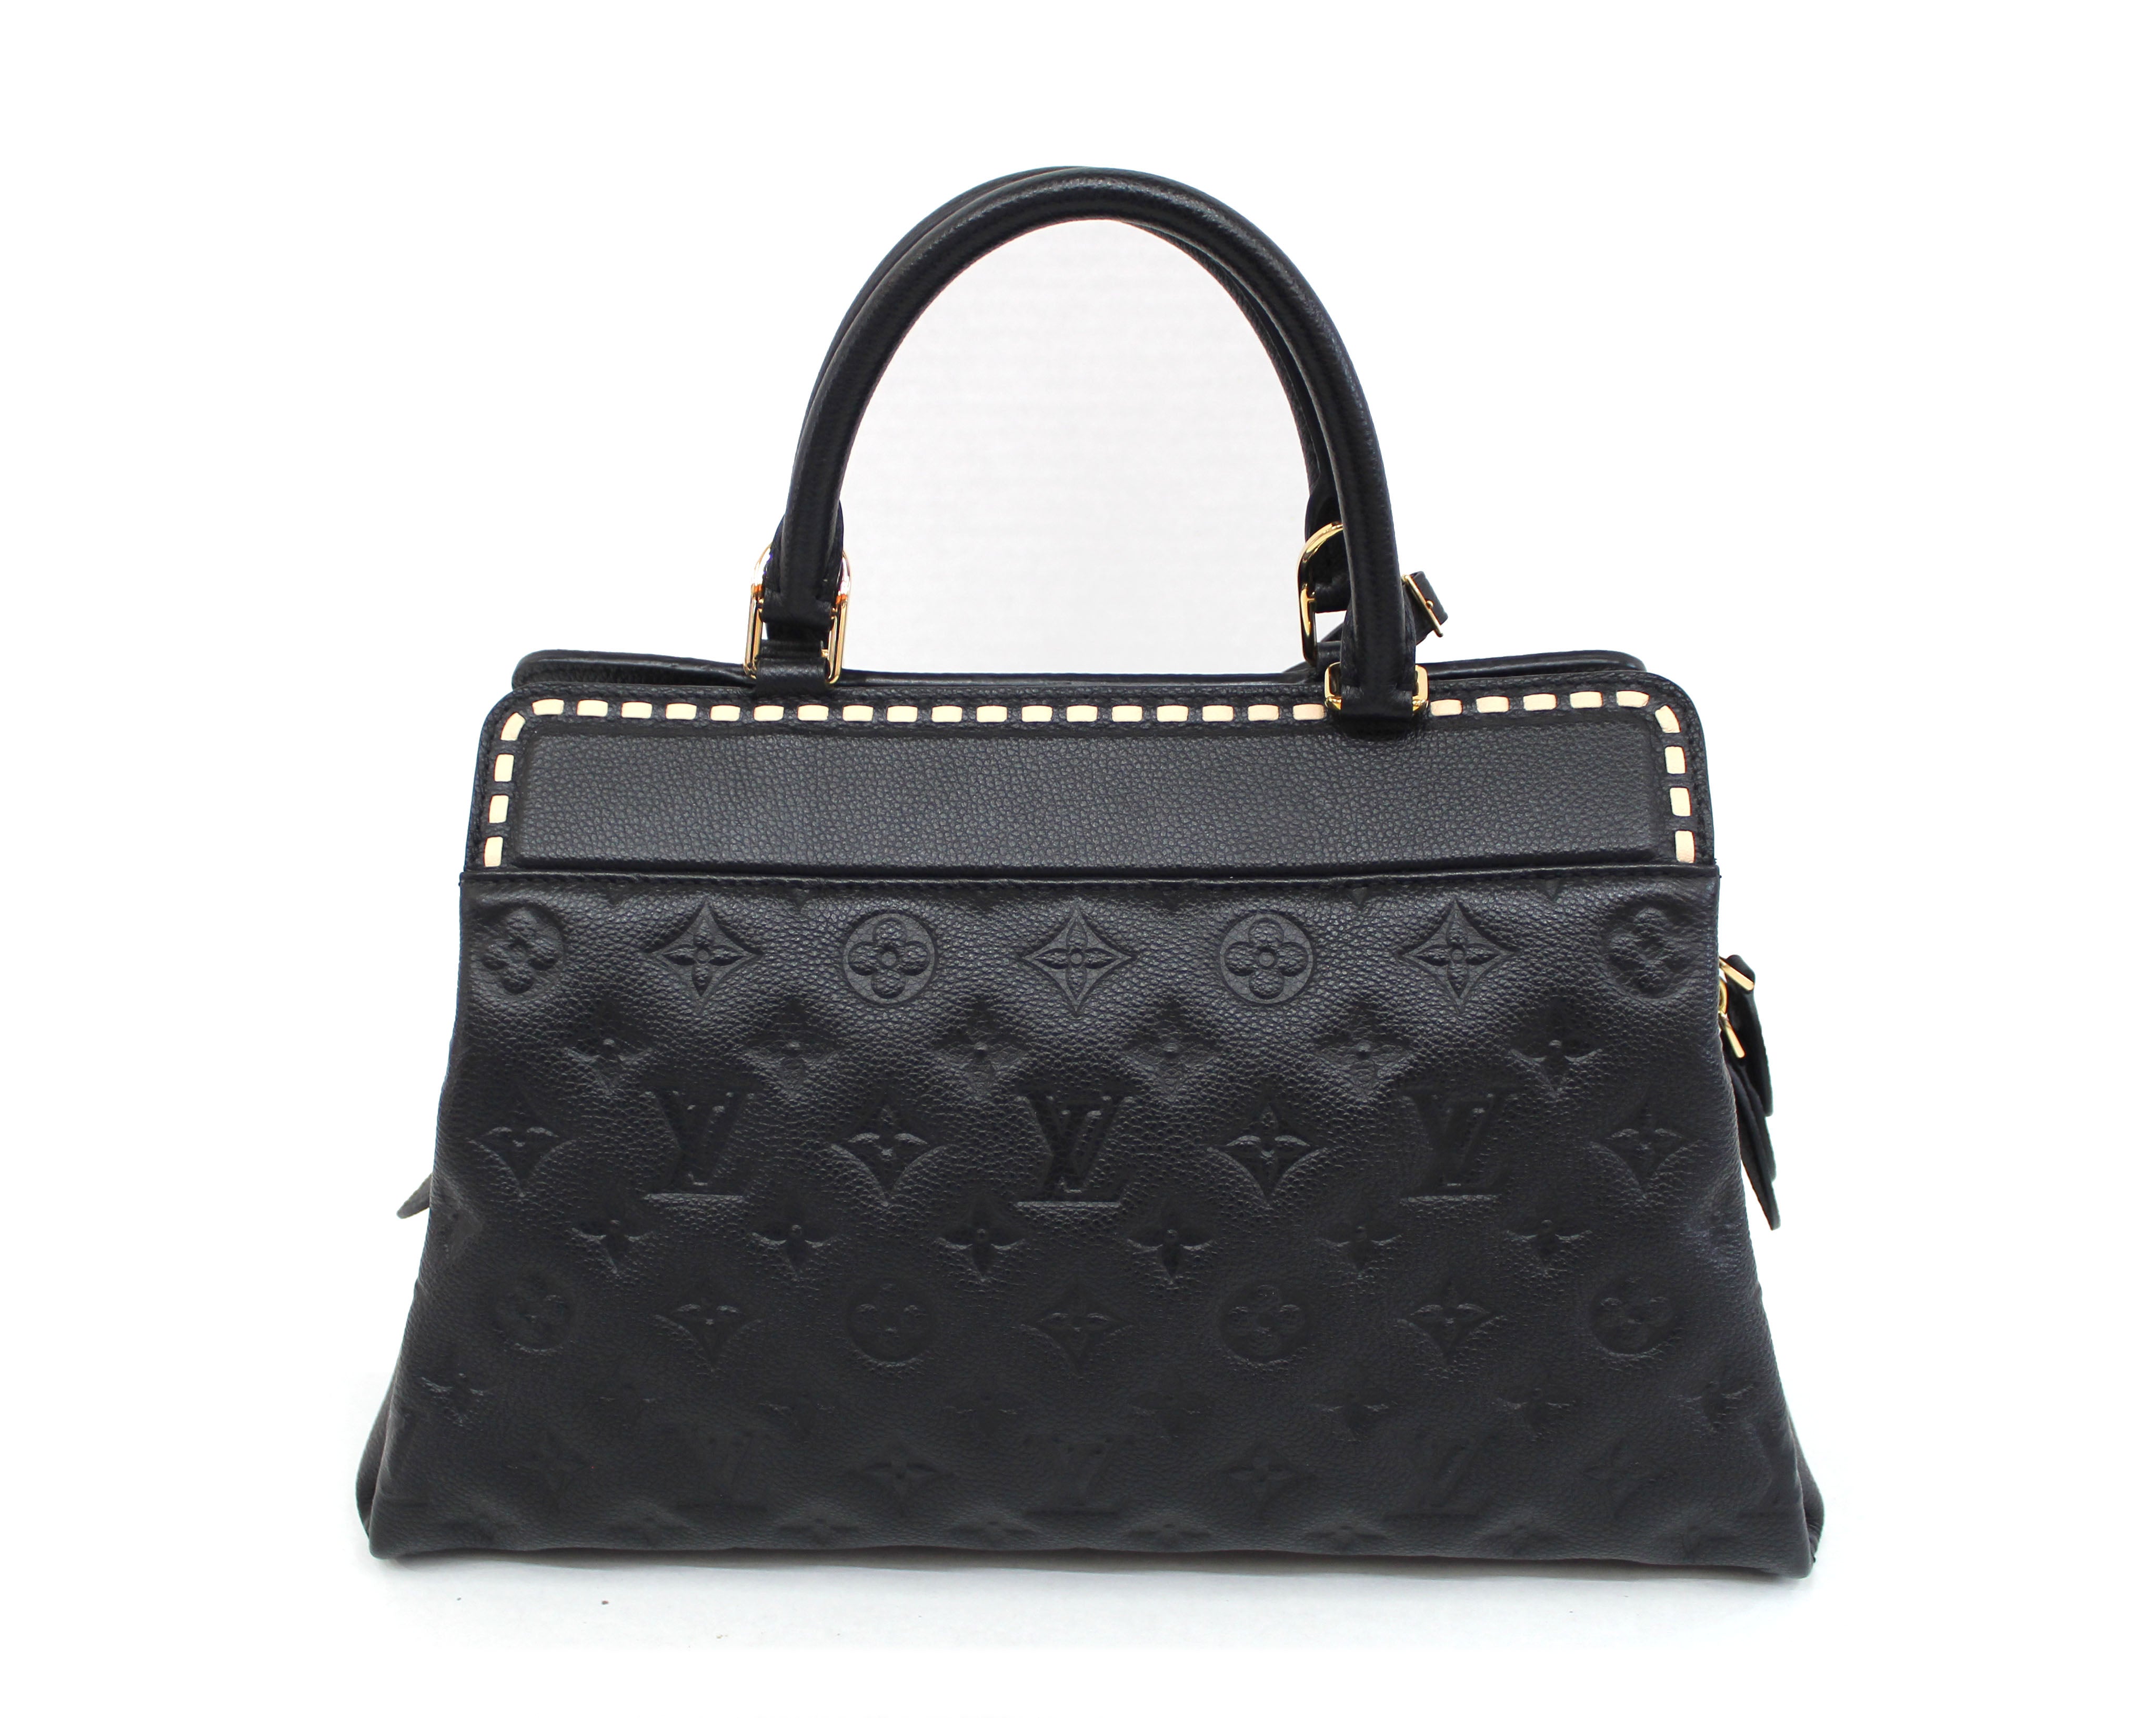 Authentic Louis Vuitton Black Empreinte Leather Vosges MM Handbag ...